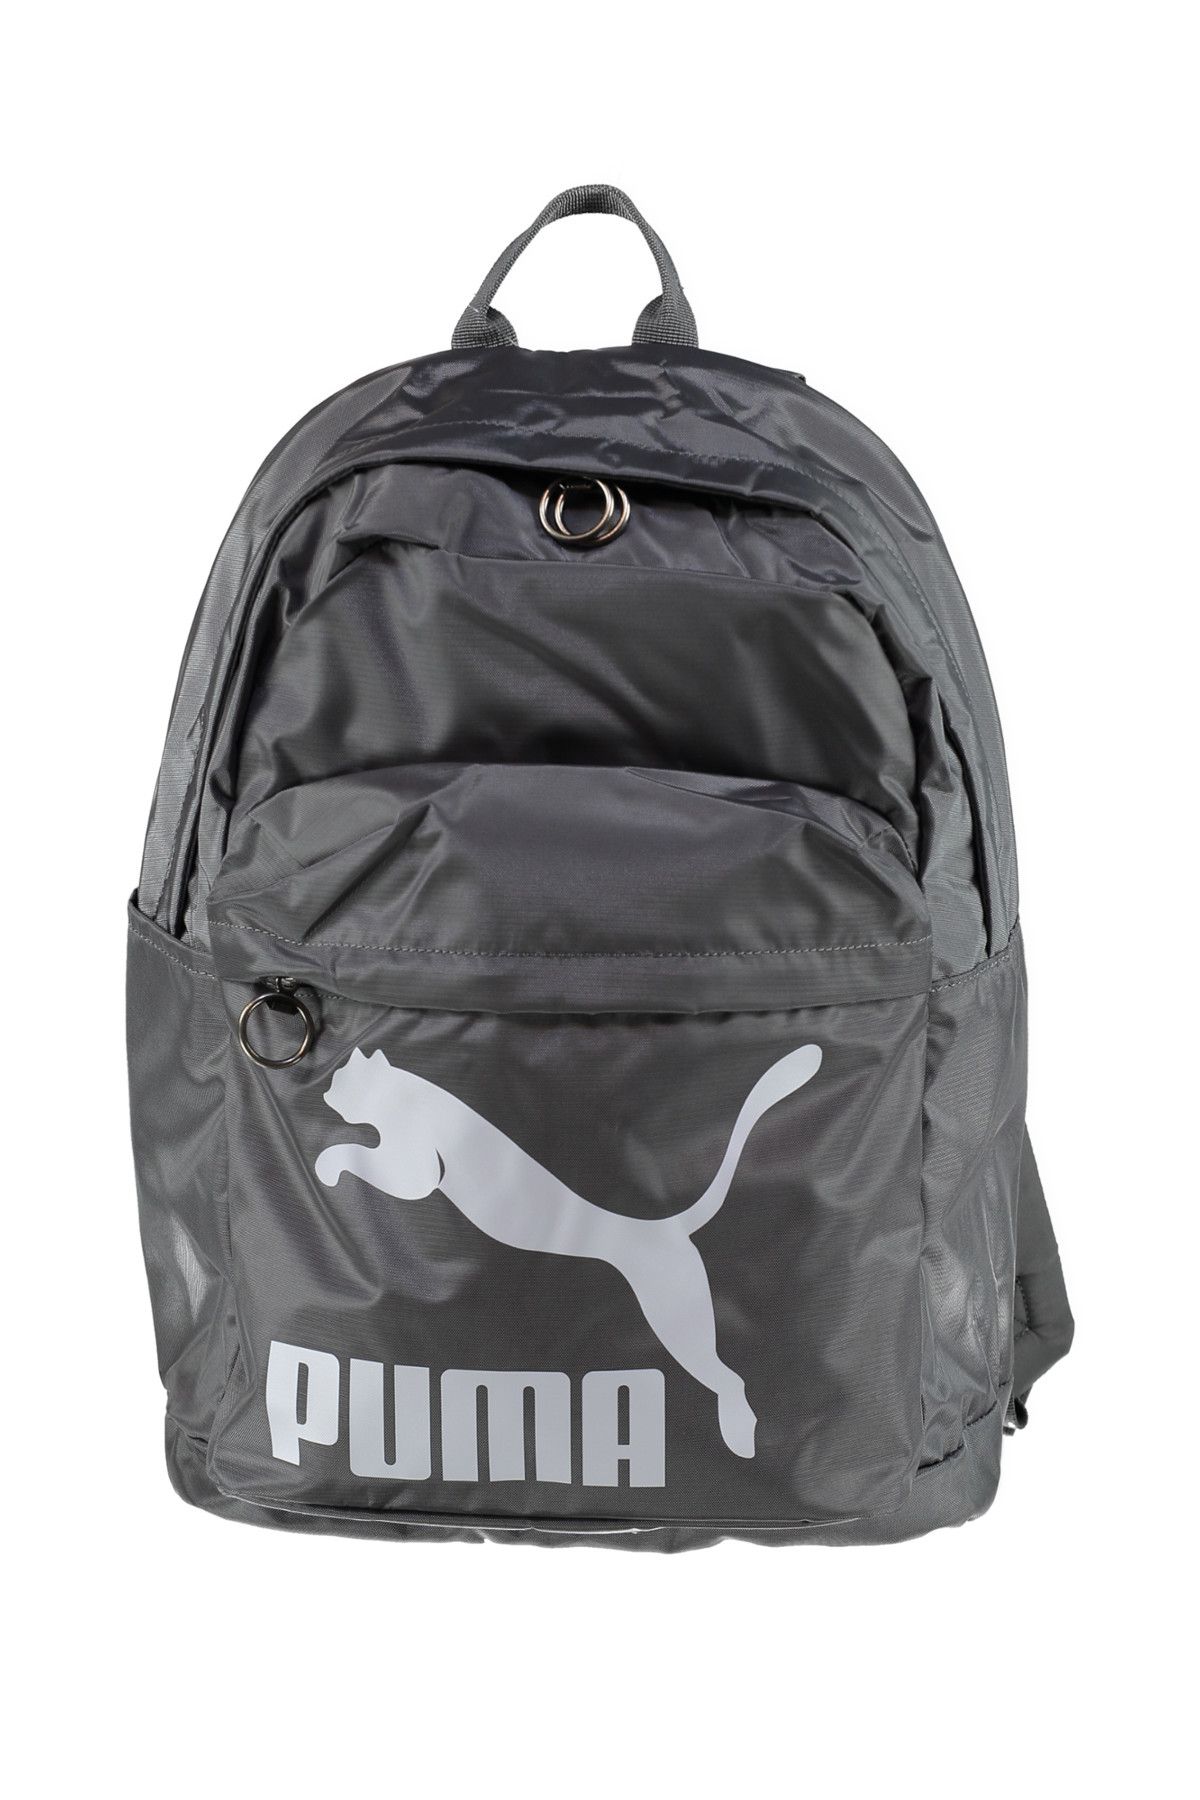 Puma Originals Metalik Gri Unisex Sırt Çantası 100385604